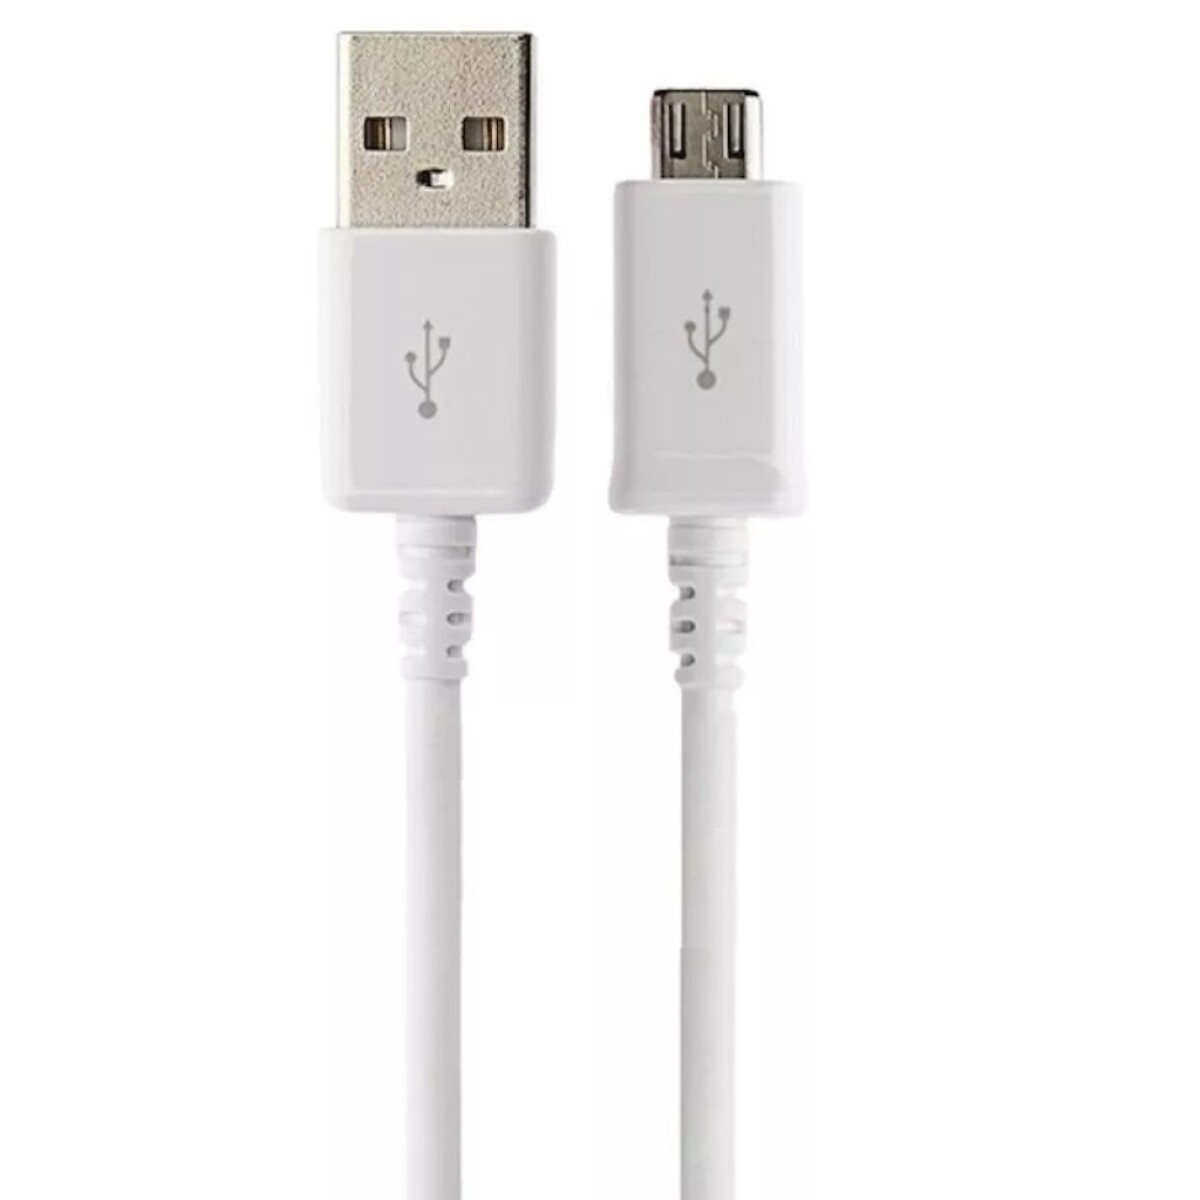 Cable USB 2.0 a MicroB macho/macho 1 mts Blanco OEM - 3851 